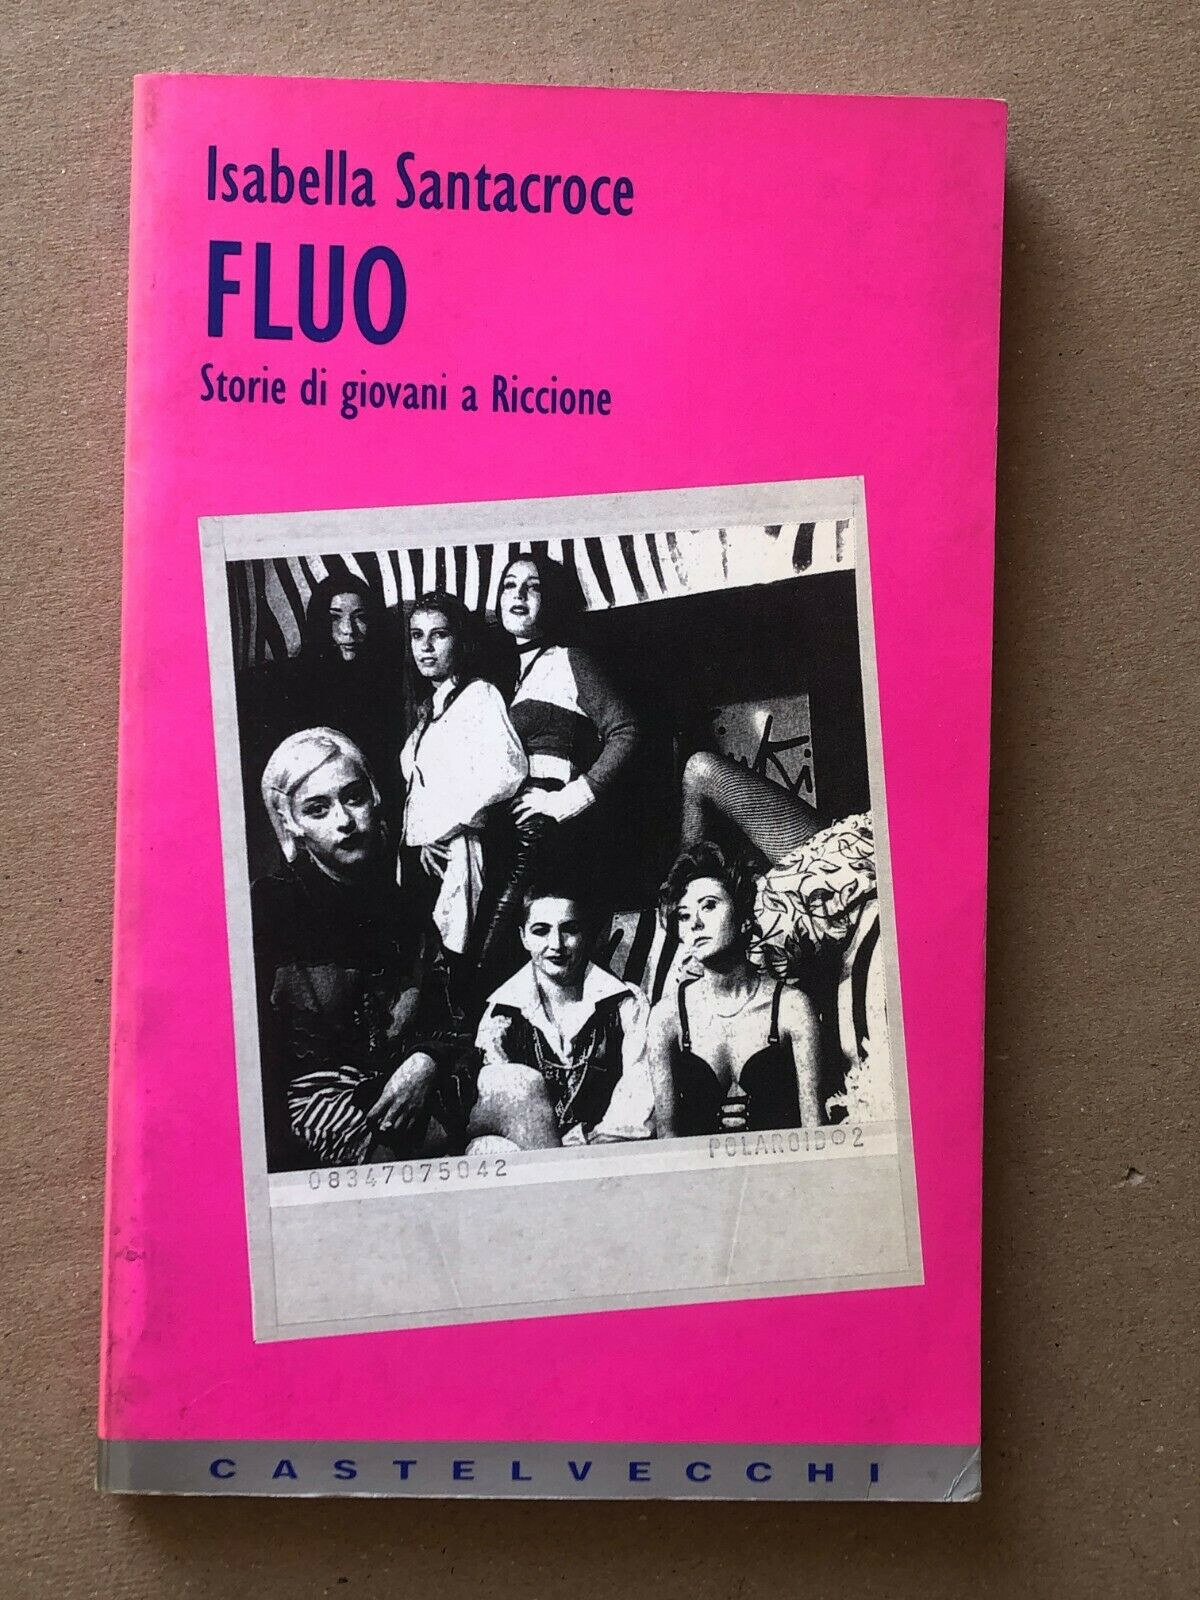 Isabella Santacroce Fluo Castelvecchi 1995 MOLTO RARO prima introvabile edizione